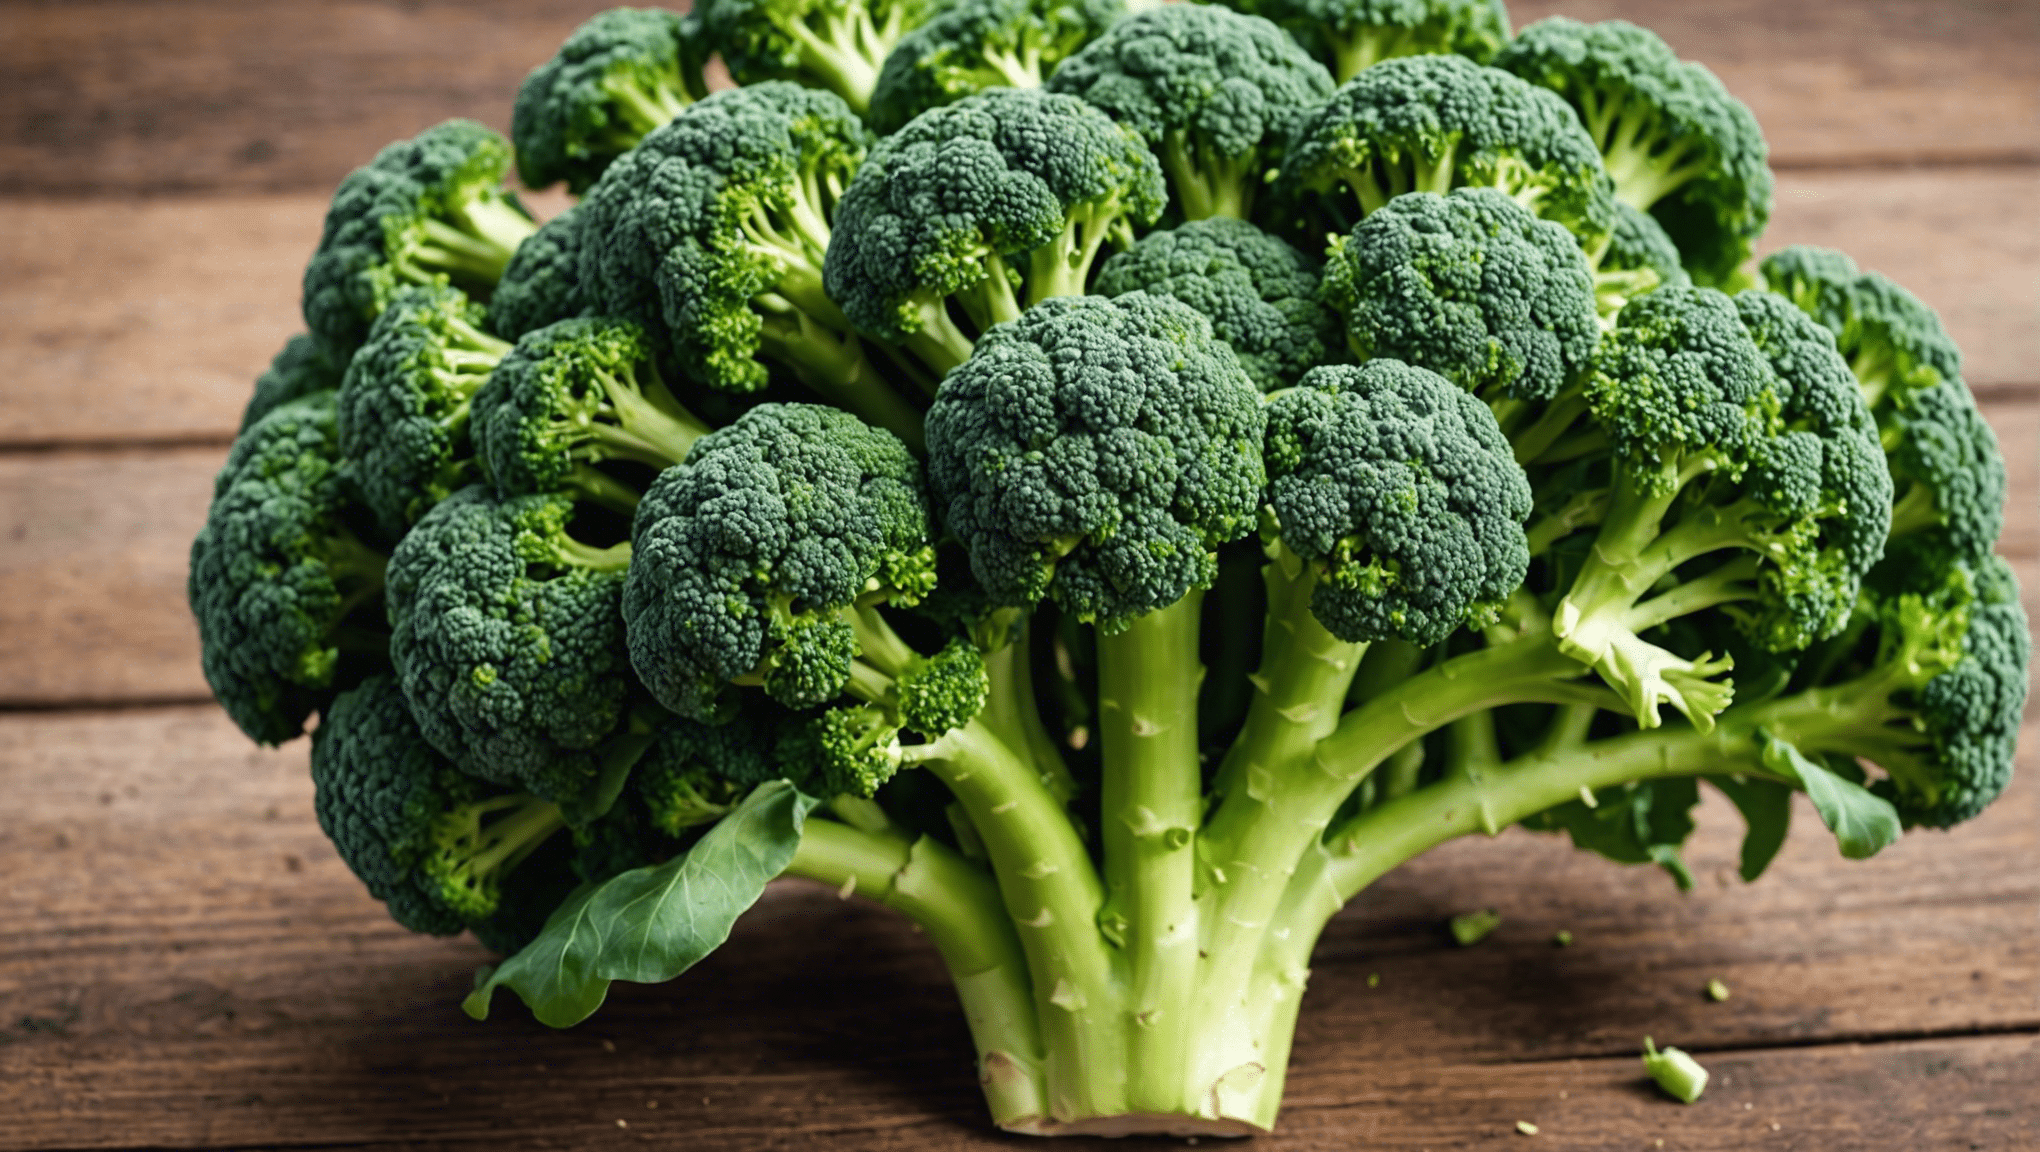 odkrijte razloge za priljubljenost semen brokolija v zdravstvenih trendih in njihove potencialne koristi za zdravje.